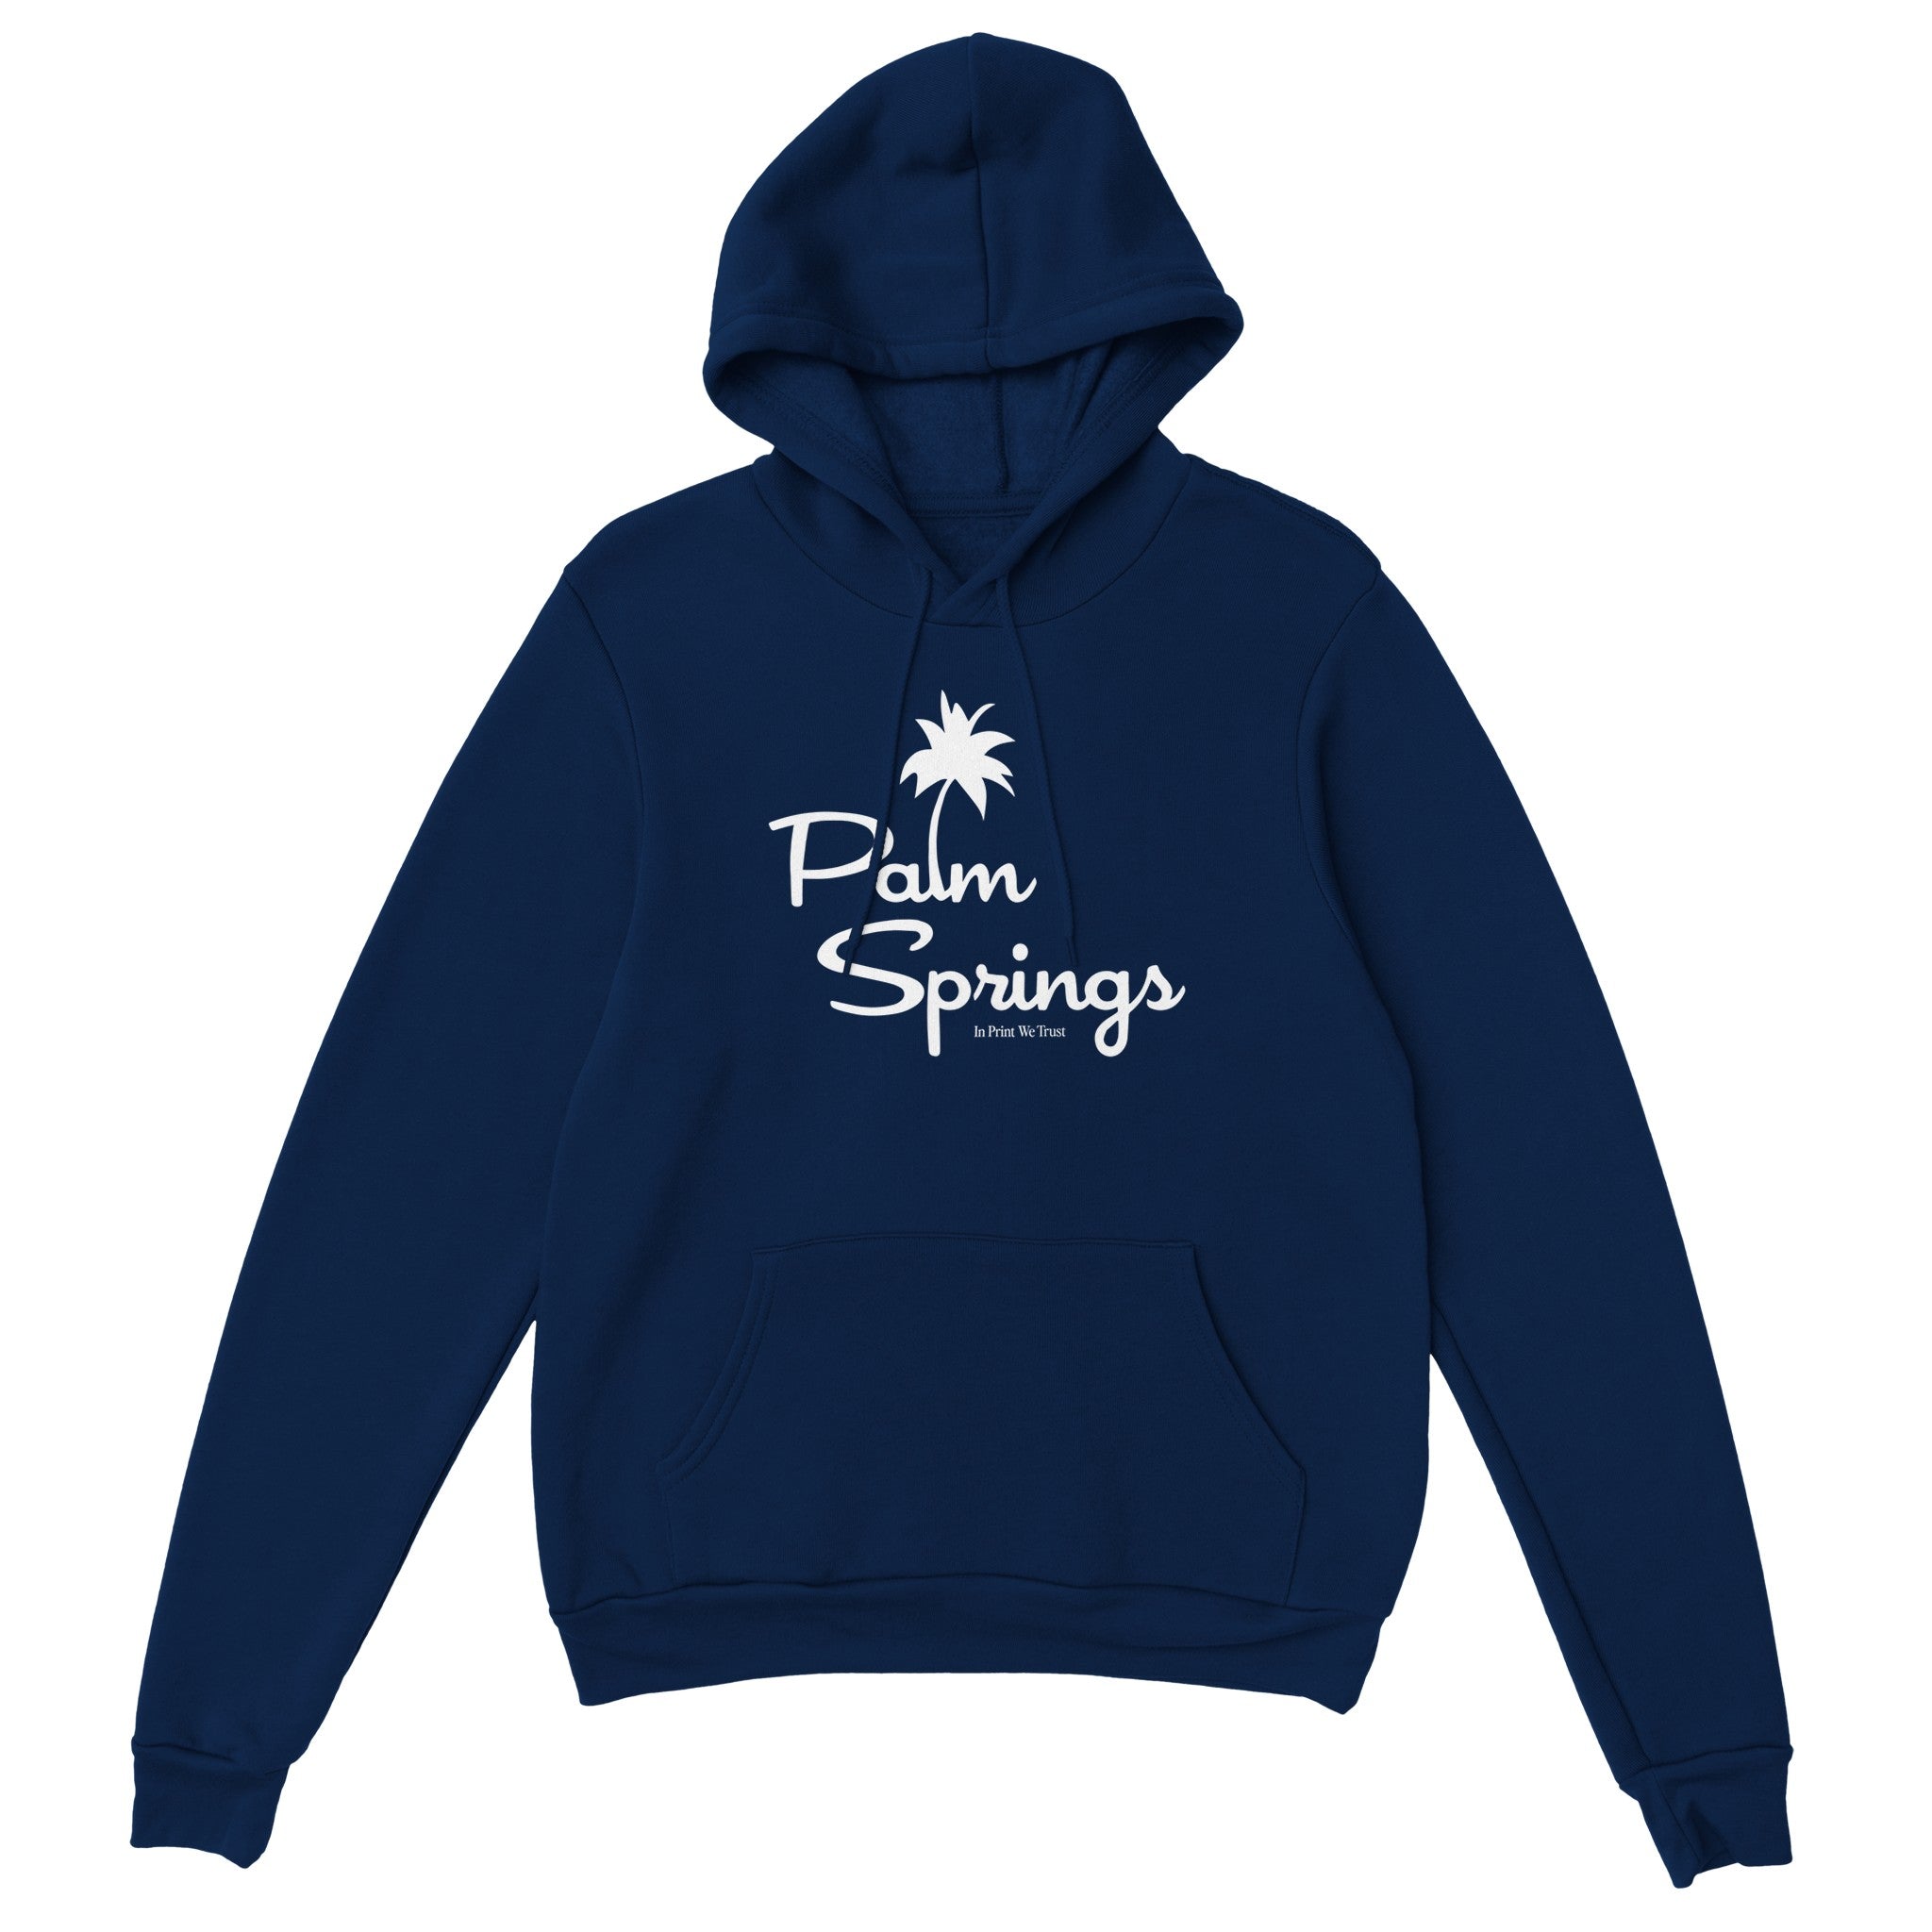 'Palm Springs' hoodie - In Print We Trust